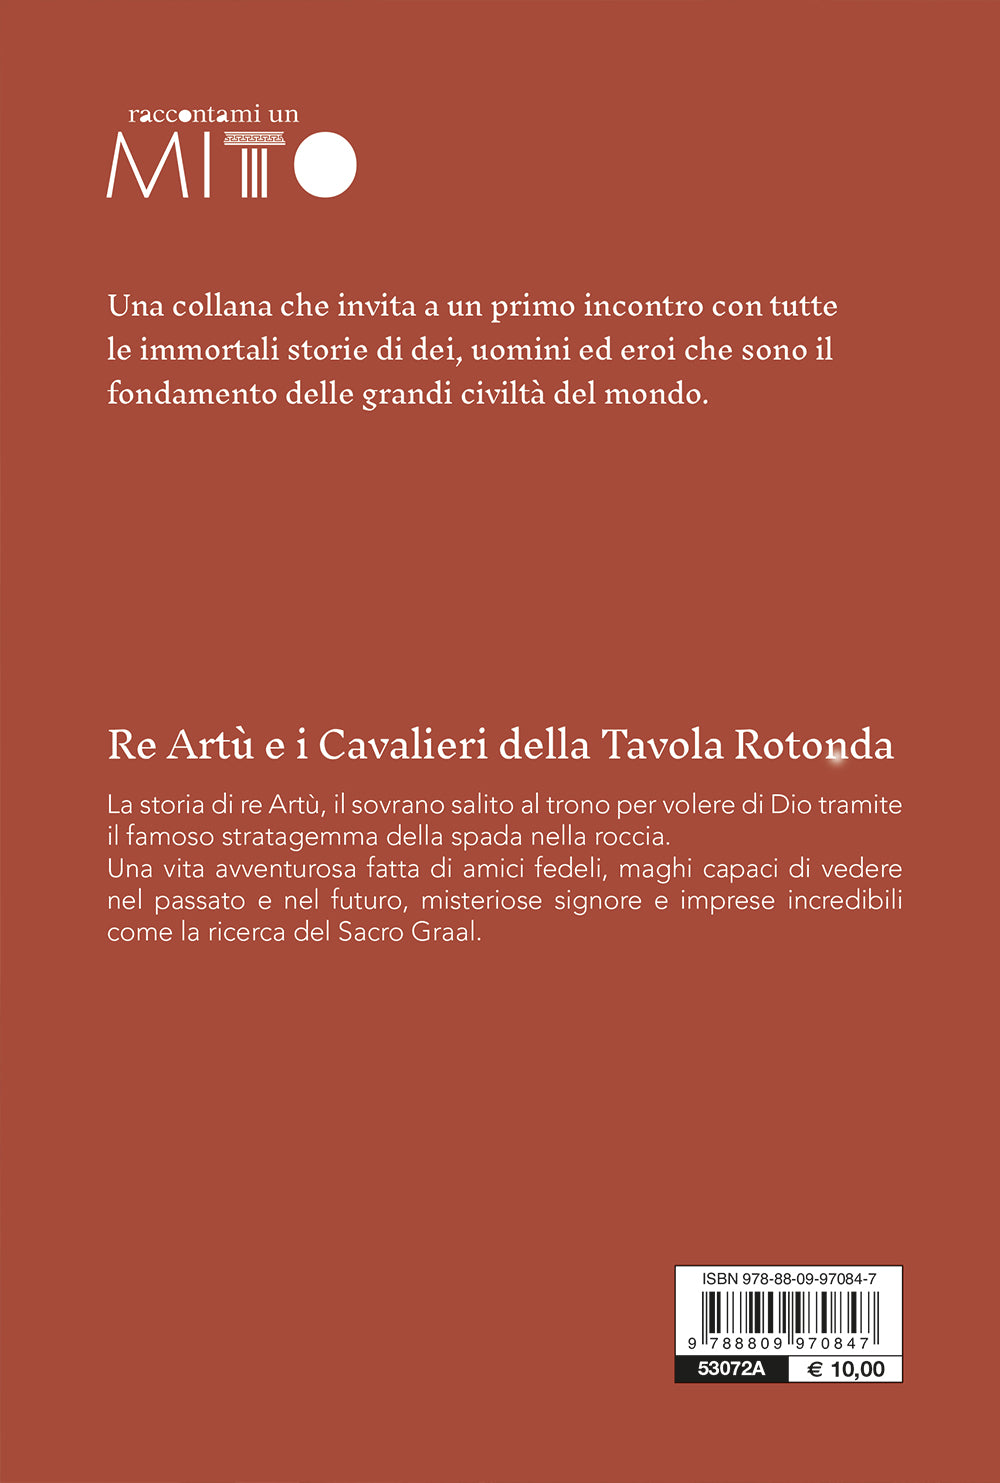 Re Artù e i cavalieri della Tavola rotonda - Volpi, Domenico - Ebook -  EPUB2 con Adobe DRM